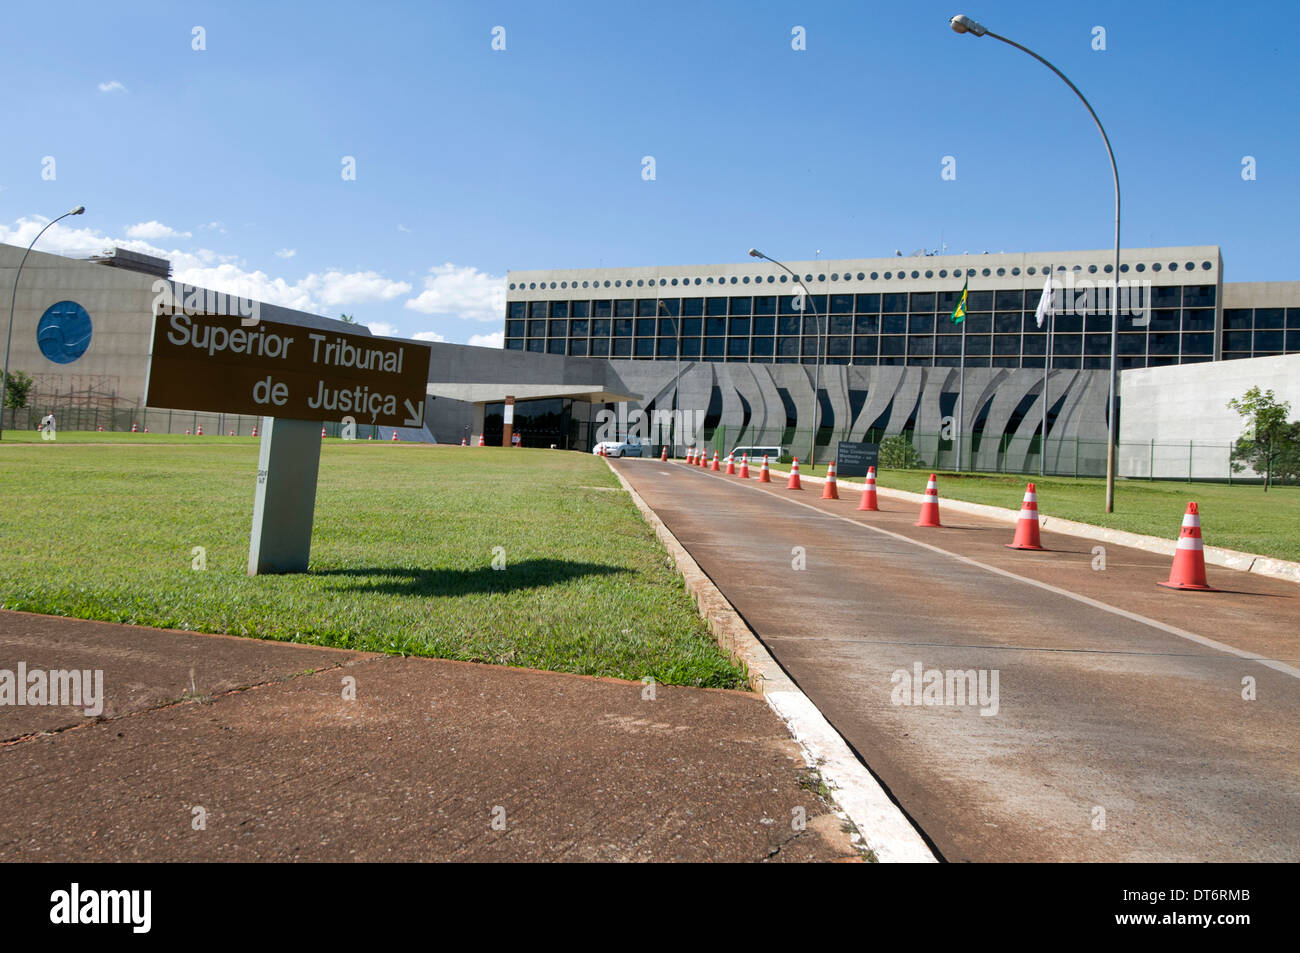 Tribunal supérieur de Justica à Brasilia (Cour supérieure de justice) à Brasilia, Brésil. Banque D'Images